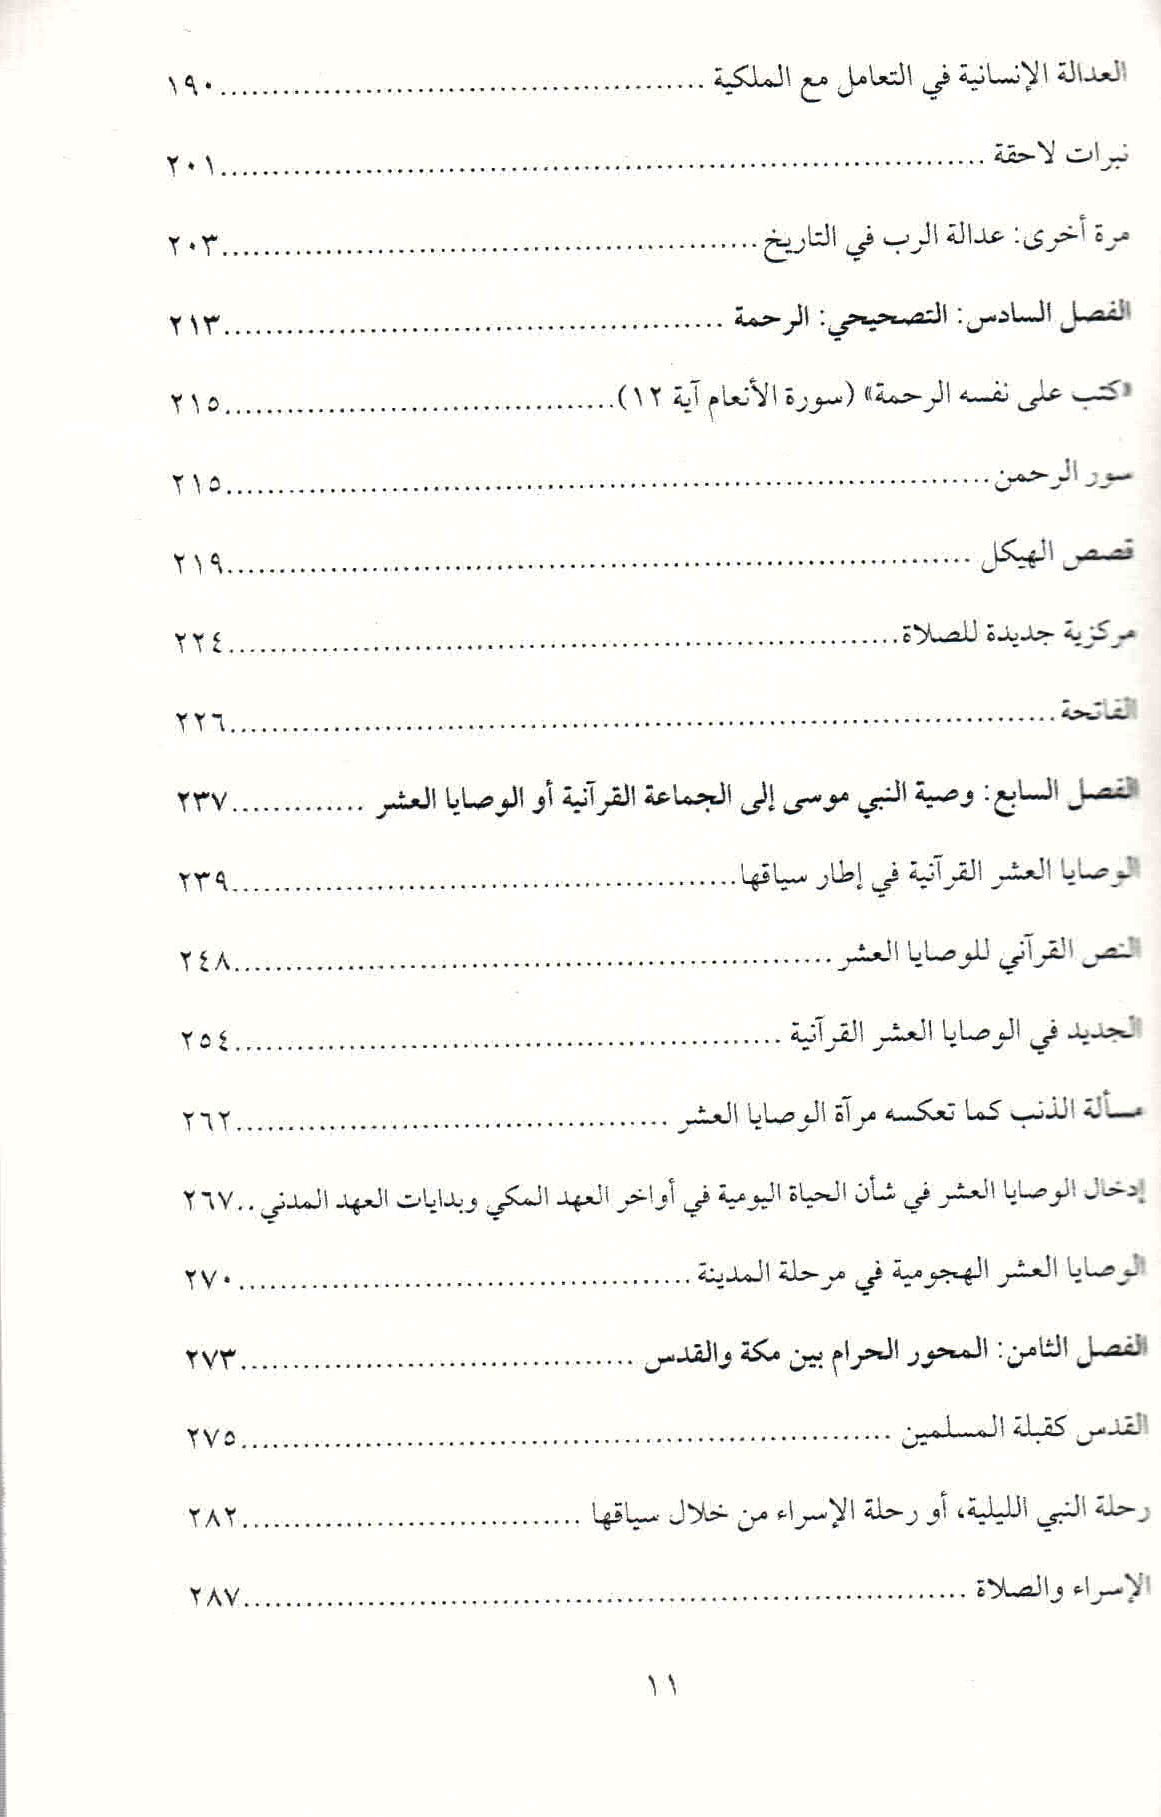 ص. 11 قائمة محتويات كتاب "كيف سحر القرآن العالم" لأنجيليكا نويفيرت